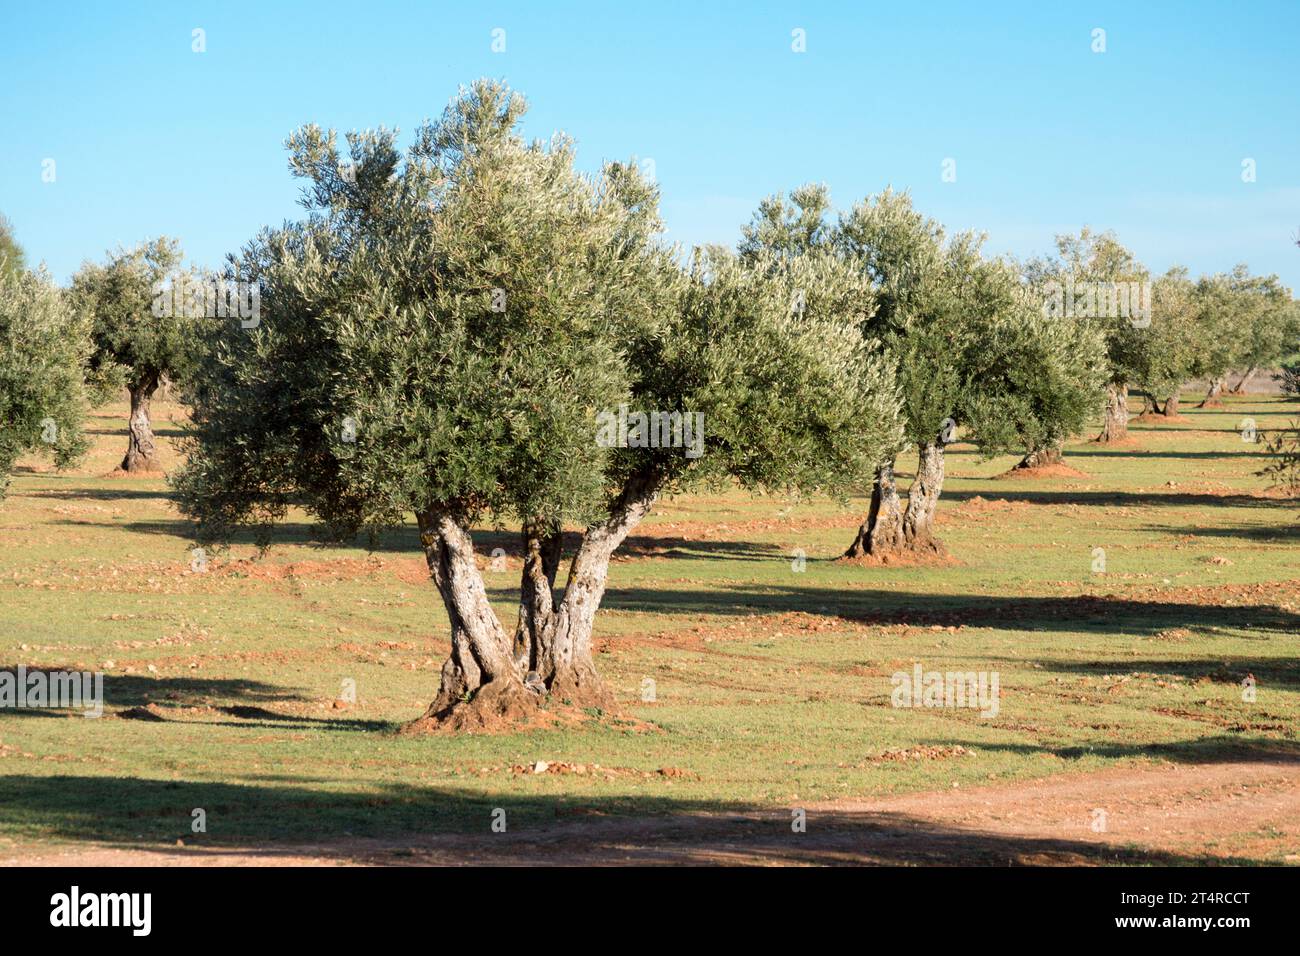 Olivar mediterráneo en España fuente de aceite de oliva virgen extra Stock Photo